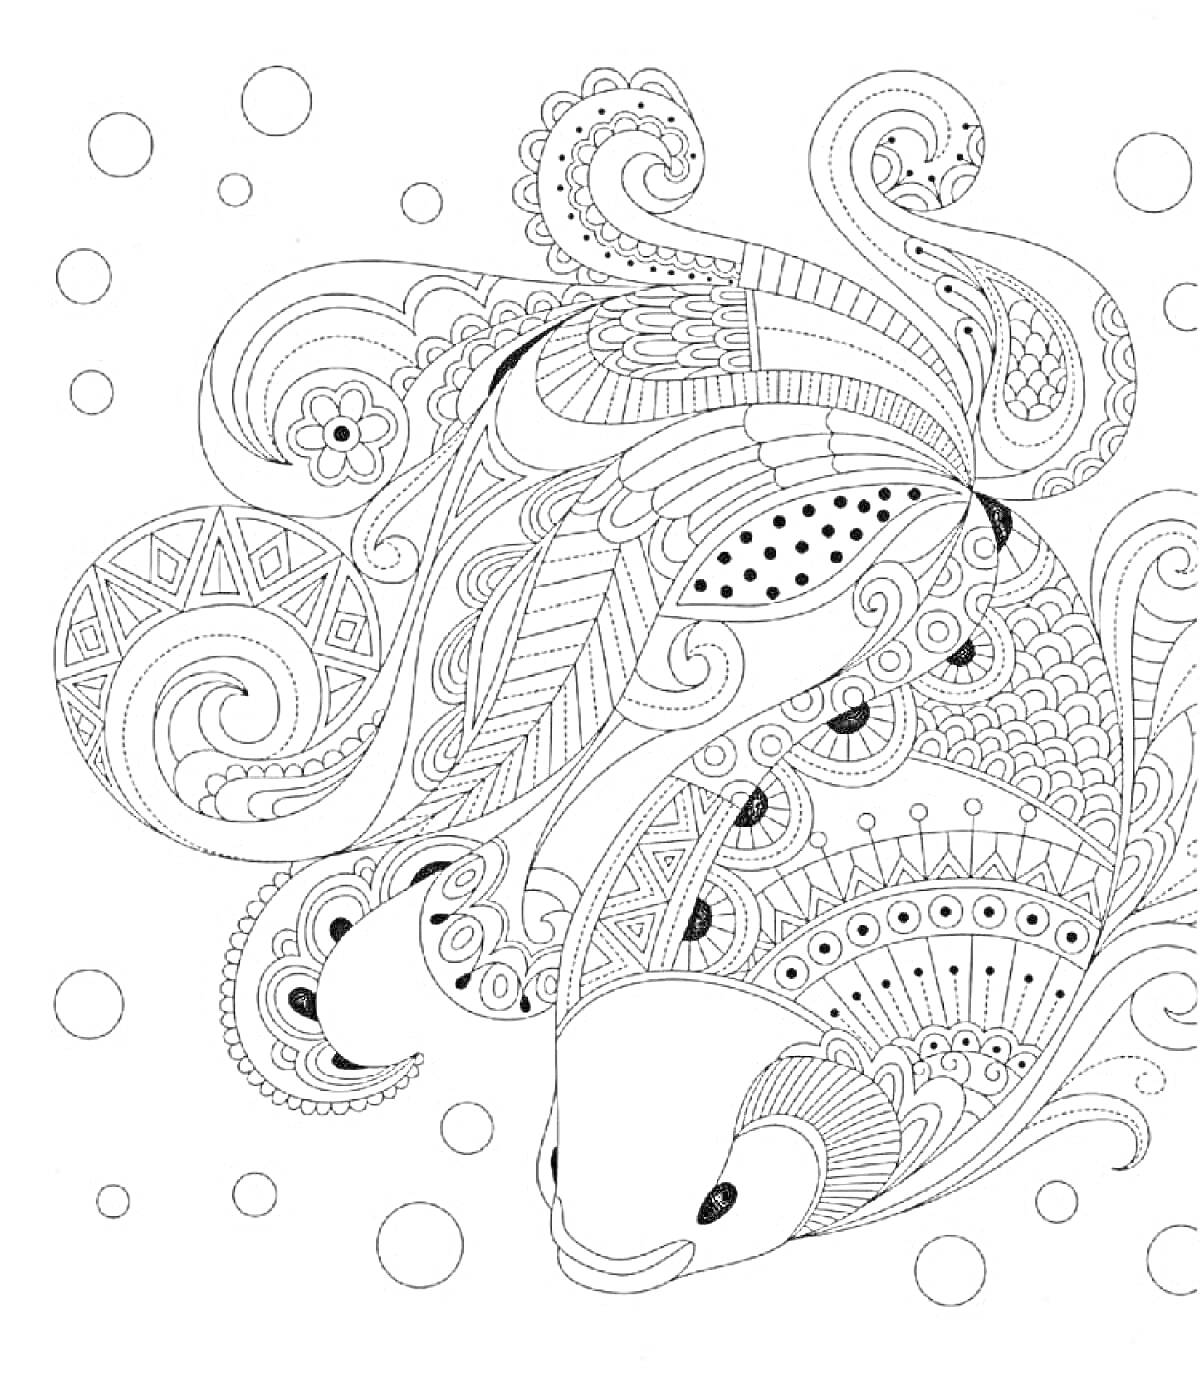 Раскраска Рыба среди абстрактных узоров и пузырьков